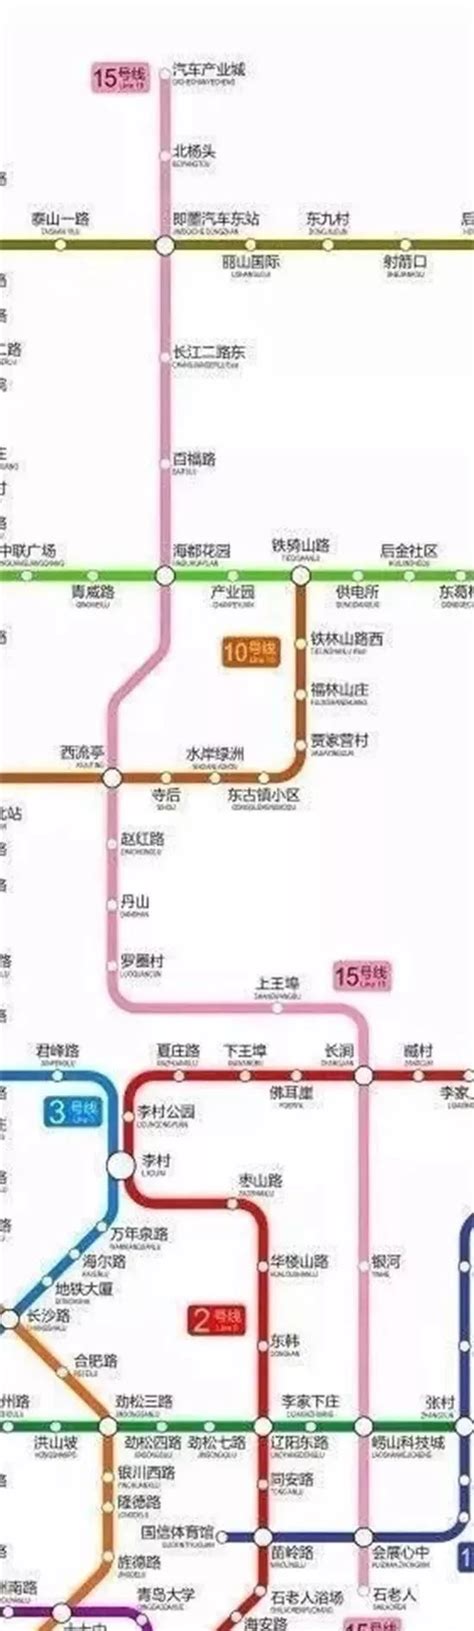 青岛地铁规划_青岛地铁规划图_青岛地铁规划线路图